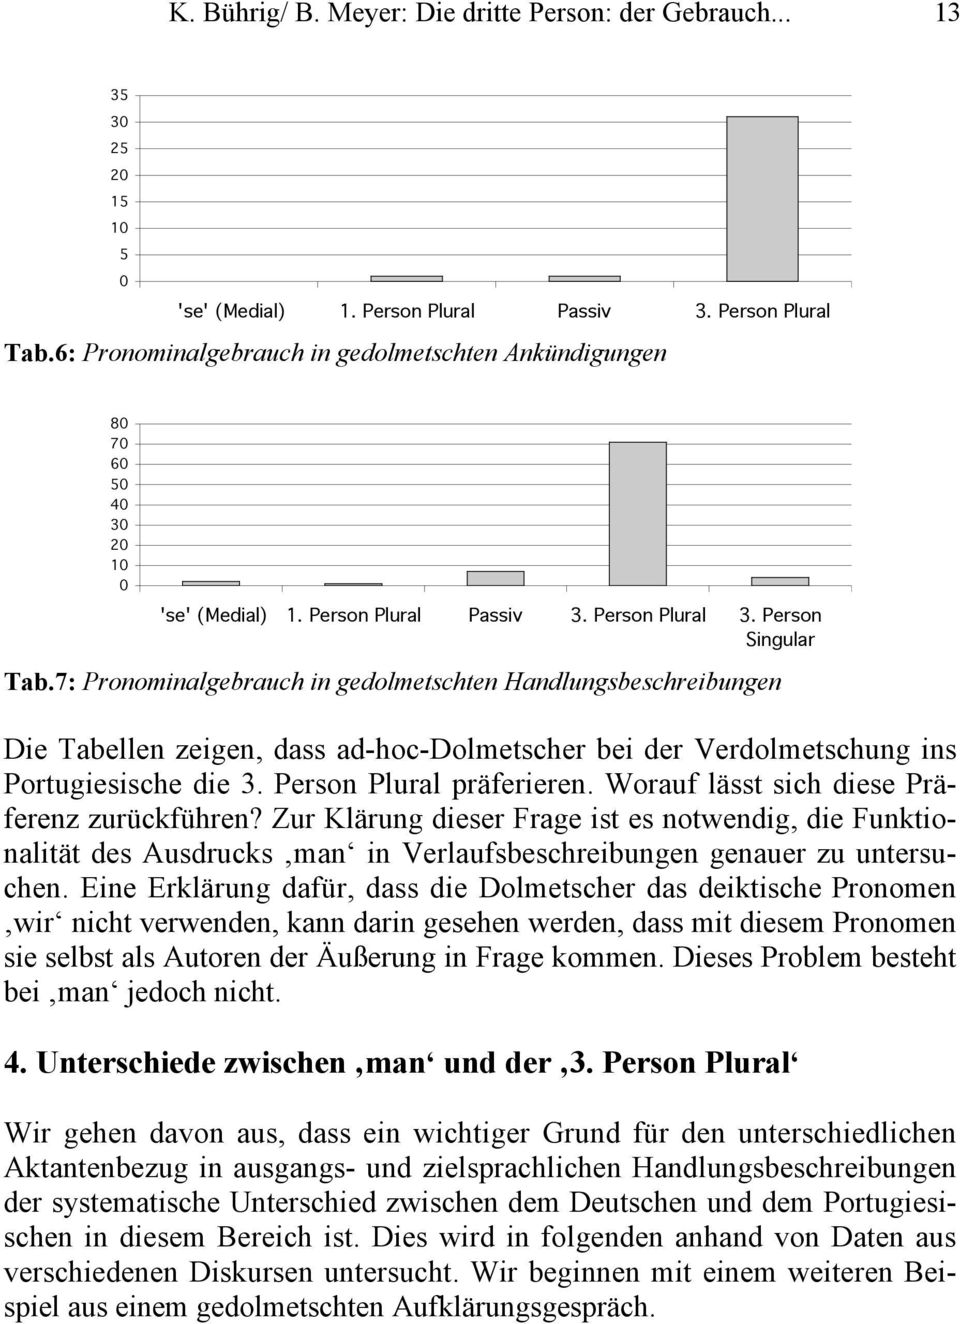 7: Pronominalgebrauch in gedolmetschten Handlungsbeschreibungen Die Tabellen zeigen, dass ad-hoc-dolmetscher bei der Verdolmetschung ins Portugiesische die 3. Person Plural präferieren.